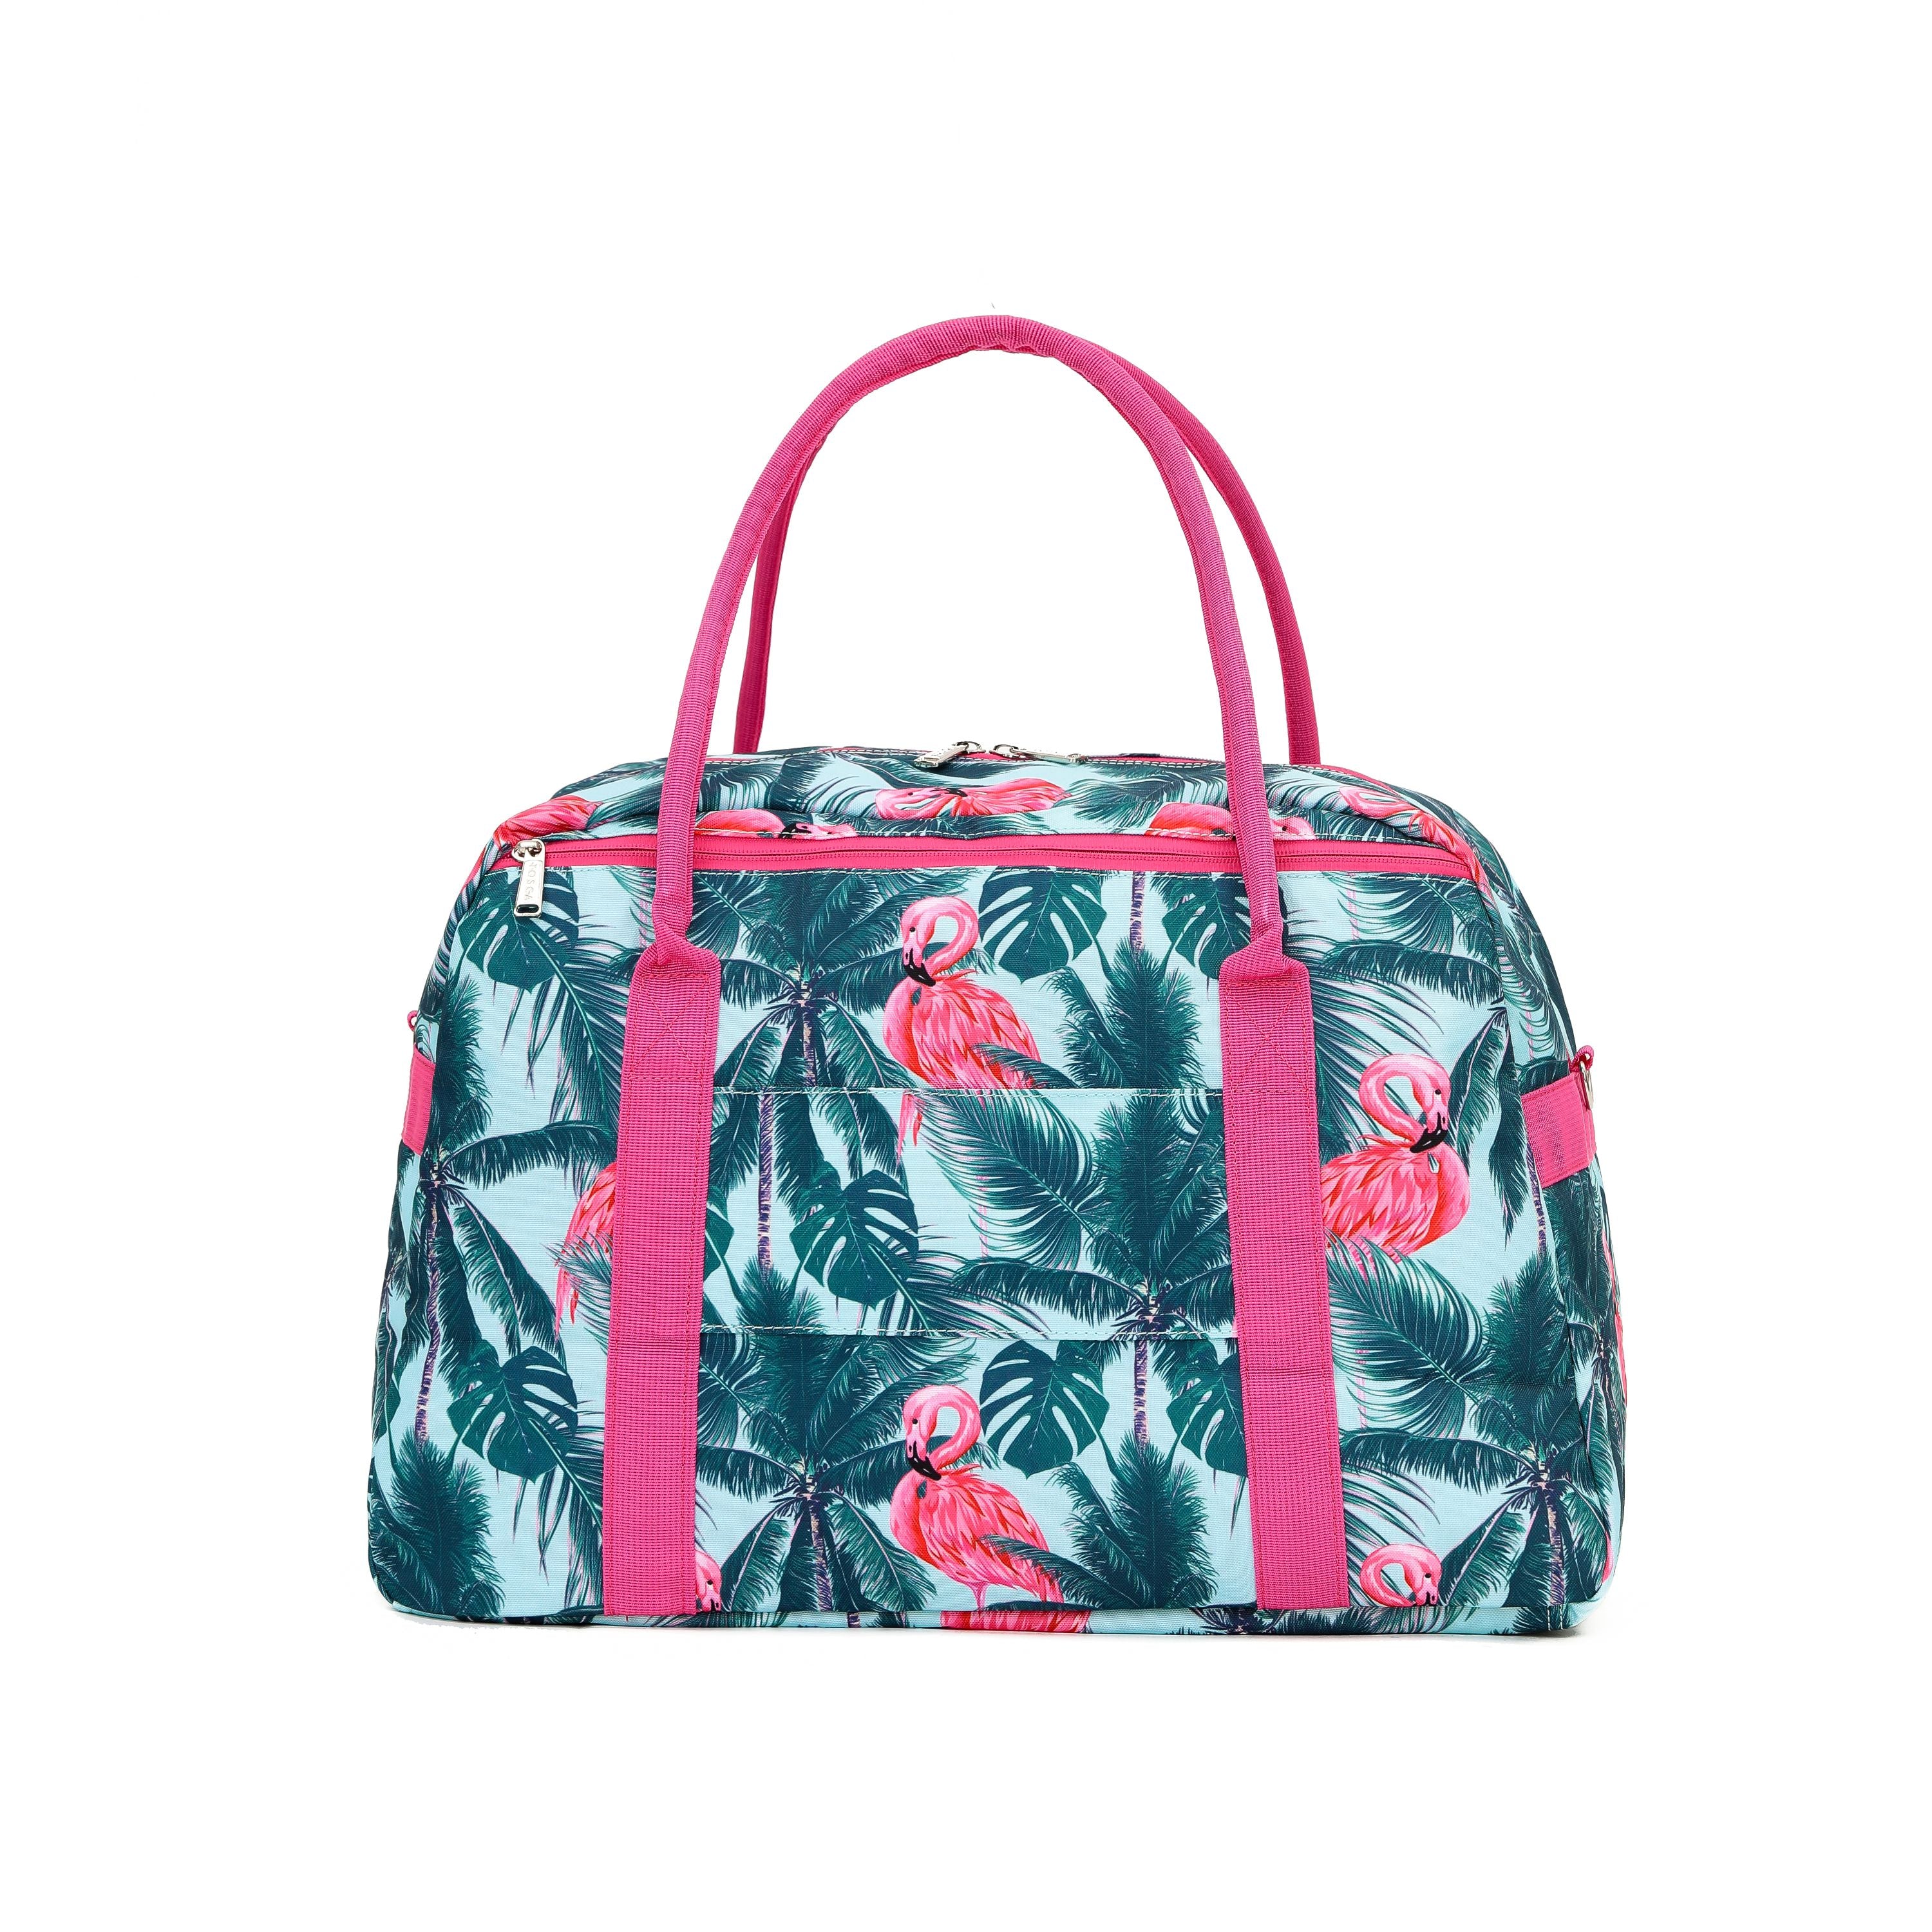 Tosca - TCA935 Fashion Tote/Duffle Bag - Flamingo-2